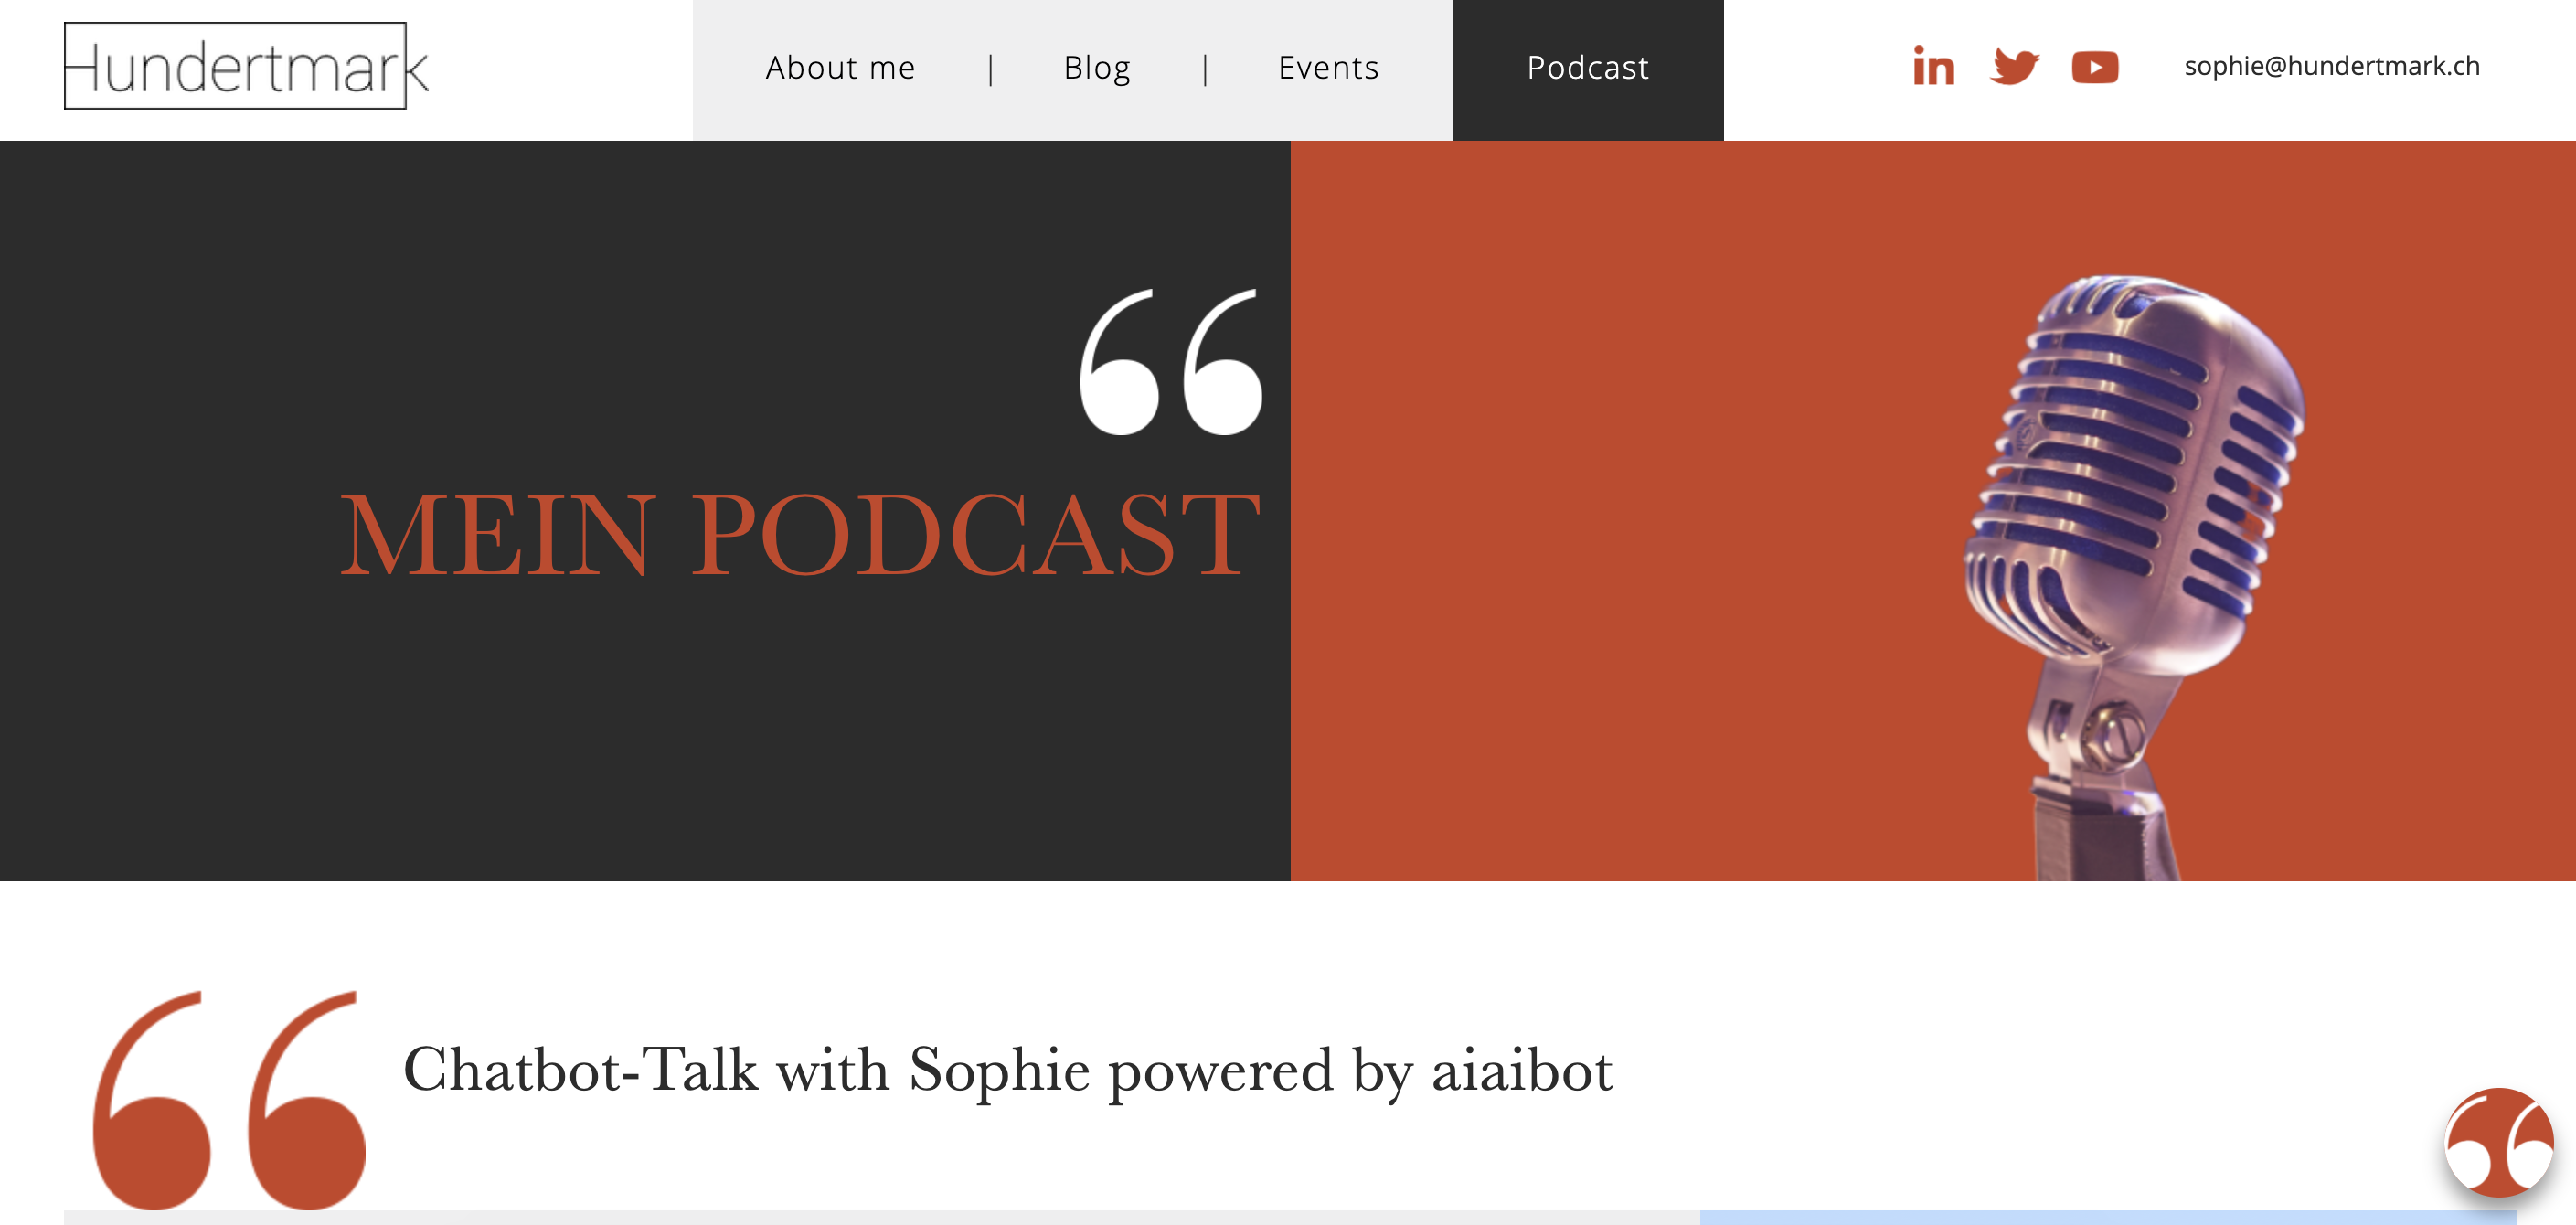 Sophie Hundertmark Podcast